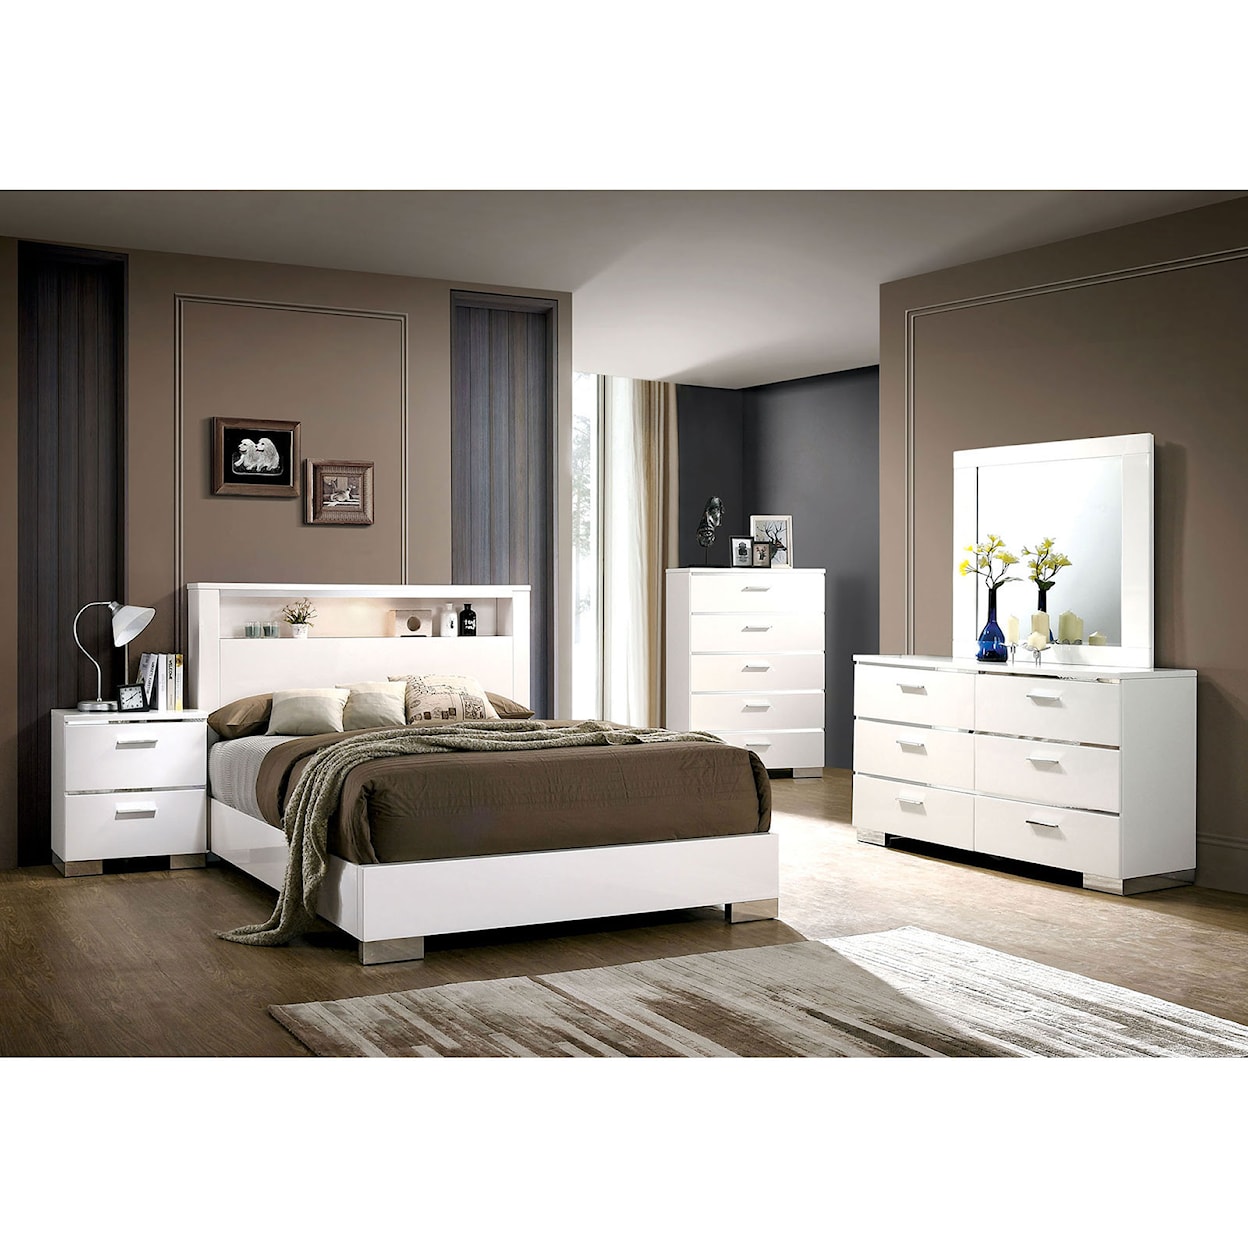 Furniture of America Malte Queen Bedroom Set